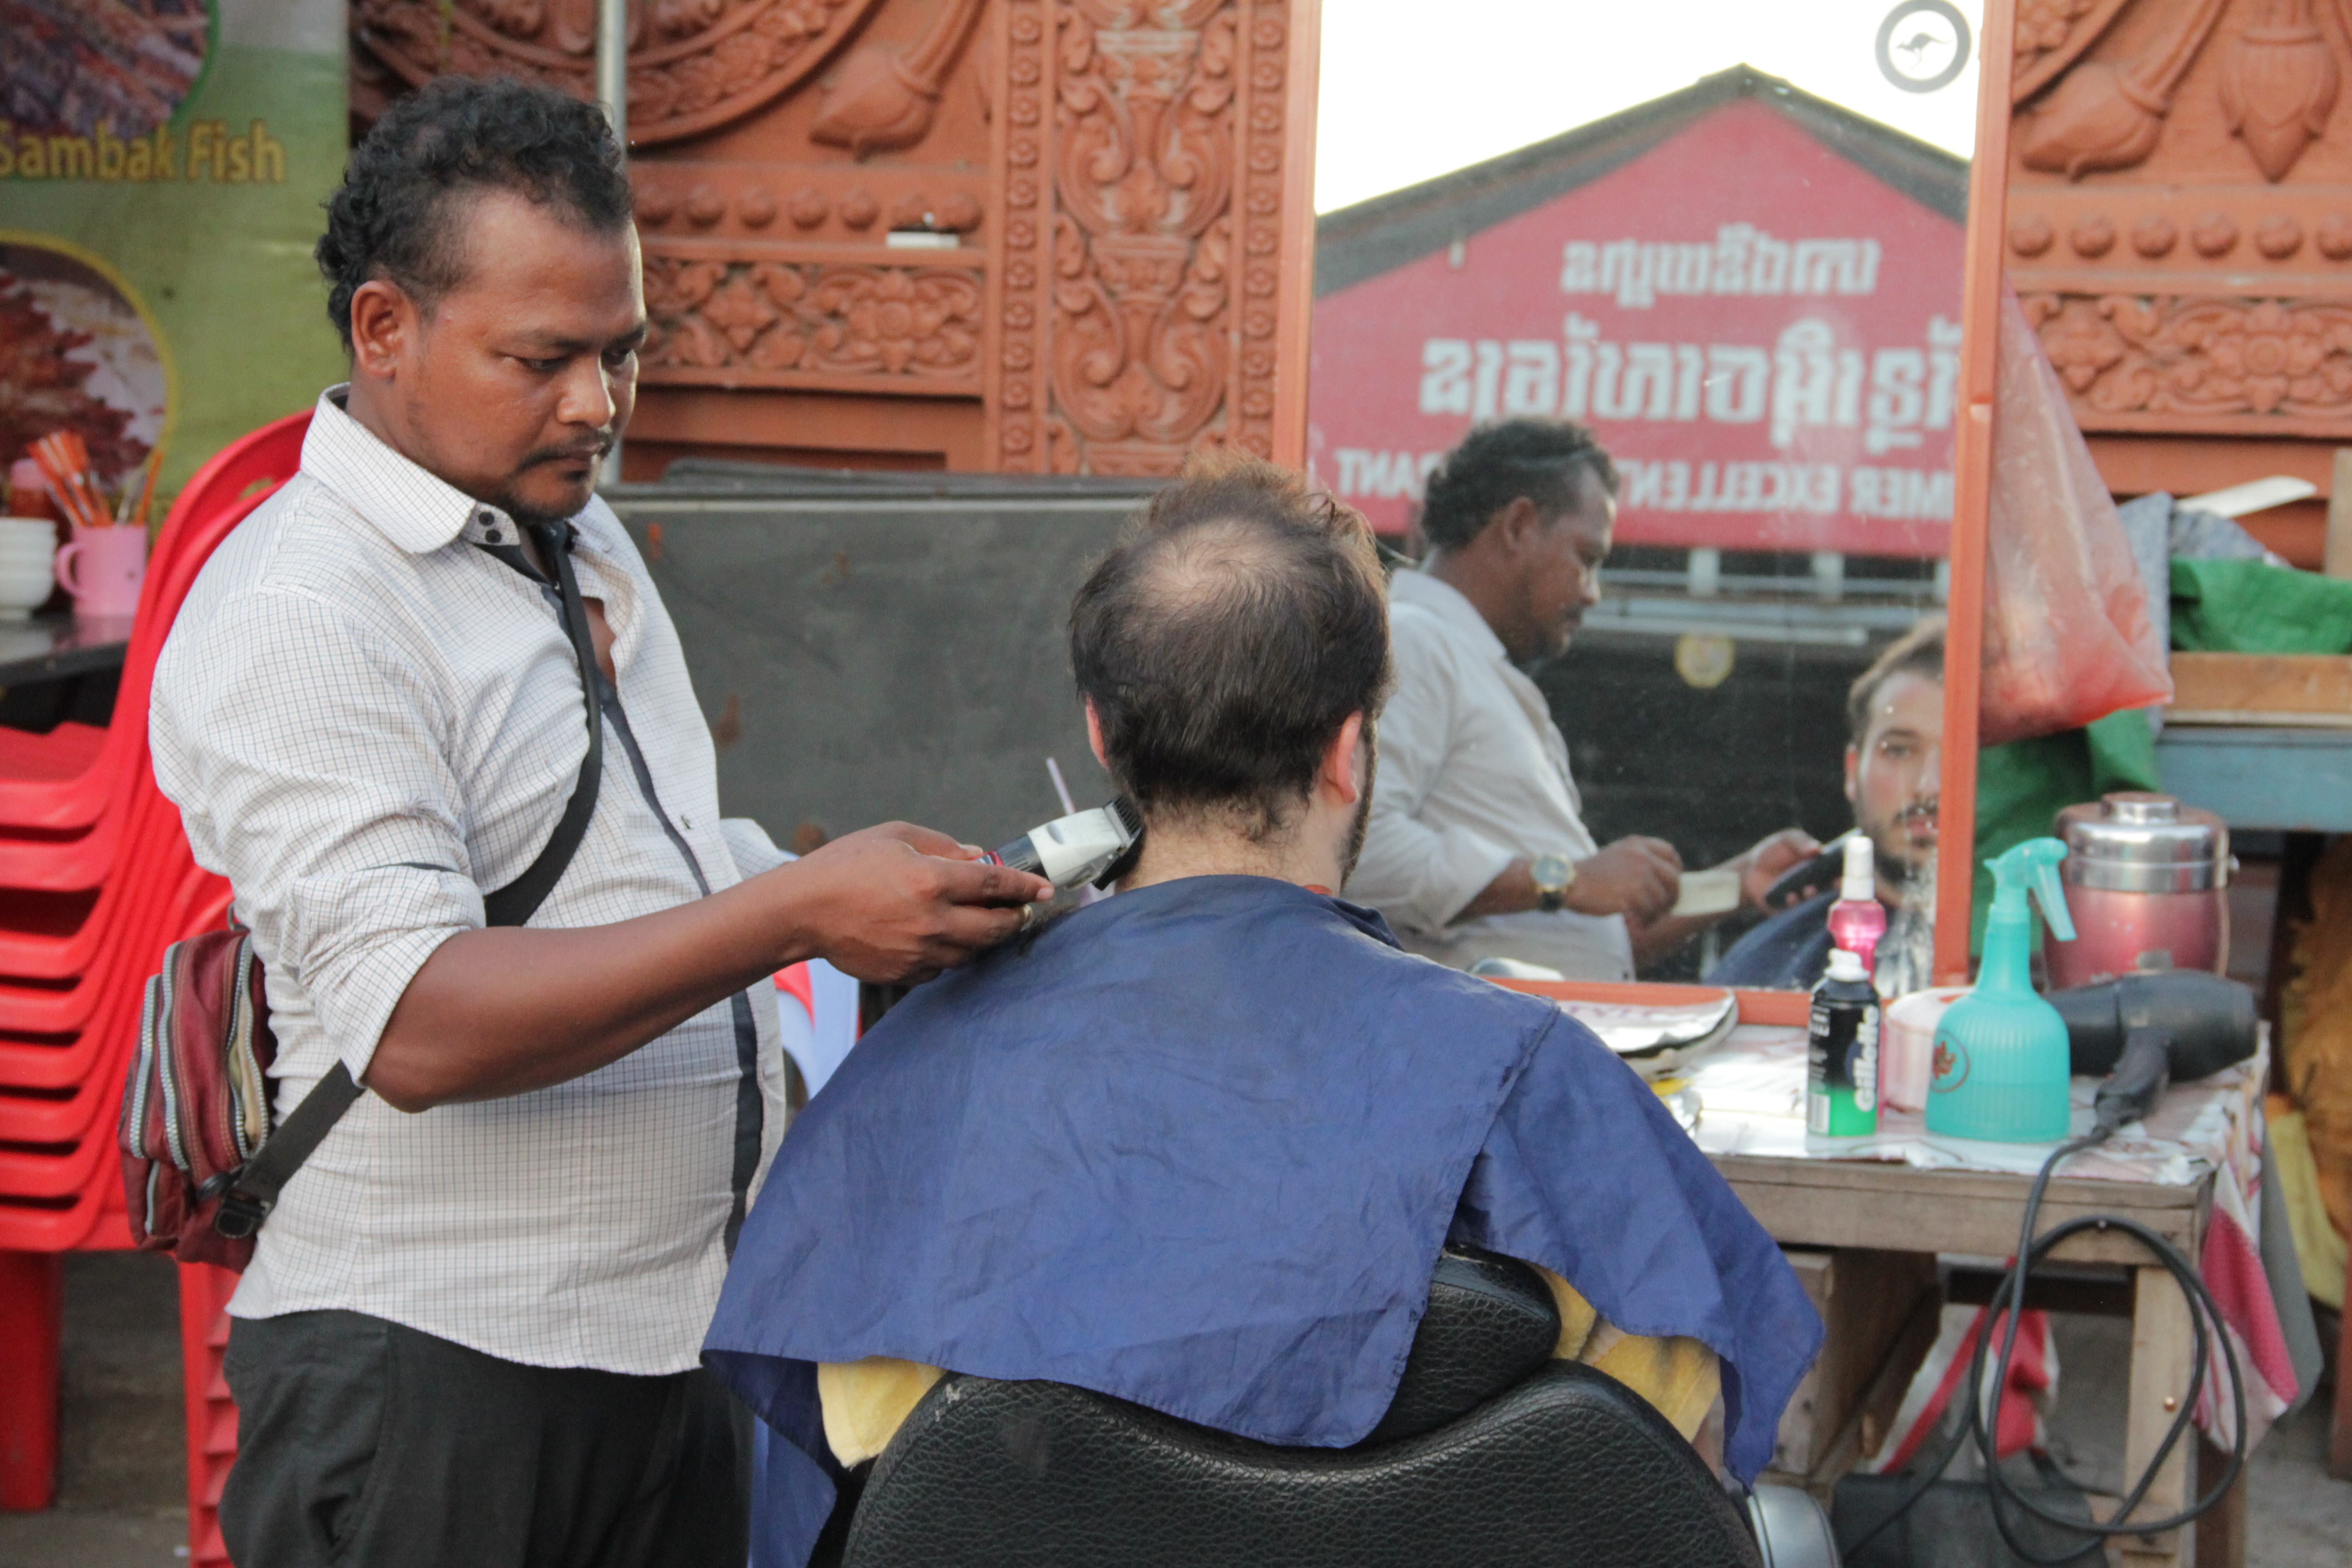 Les coiffeurs de rue proposent un rasage complet pour 1 ou 2 dollar(s) (© Jérôme Decoster).